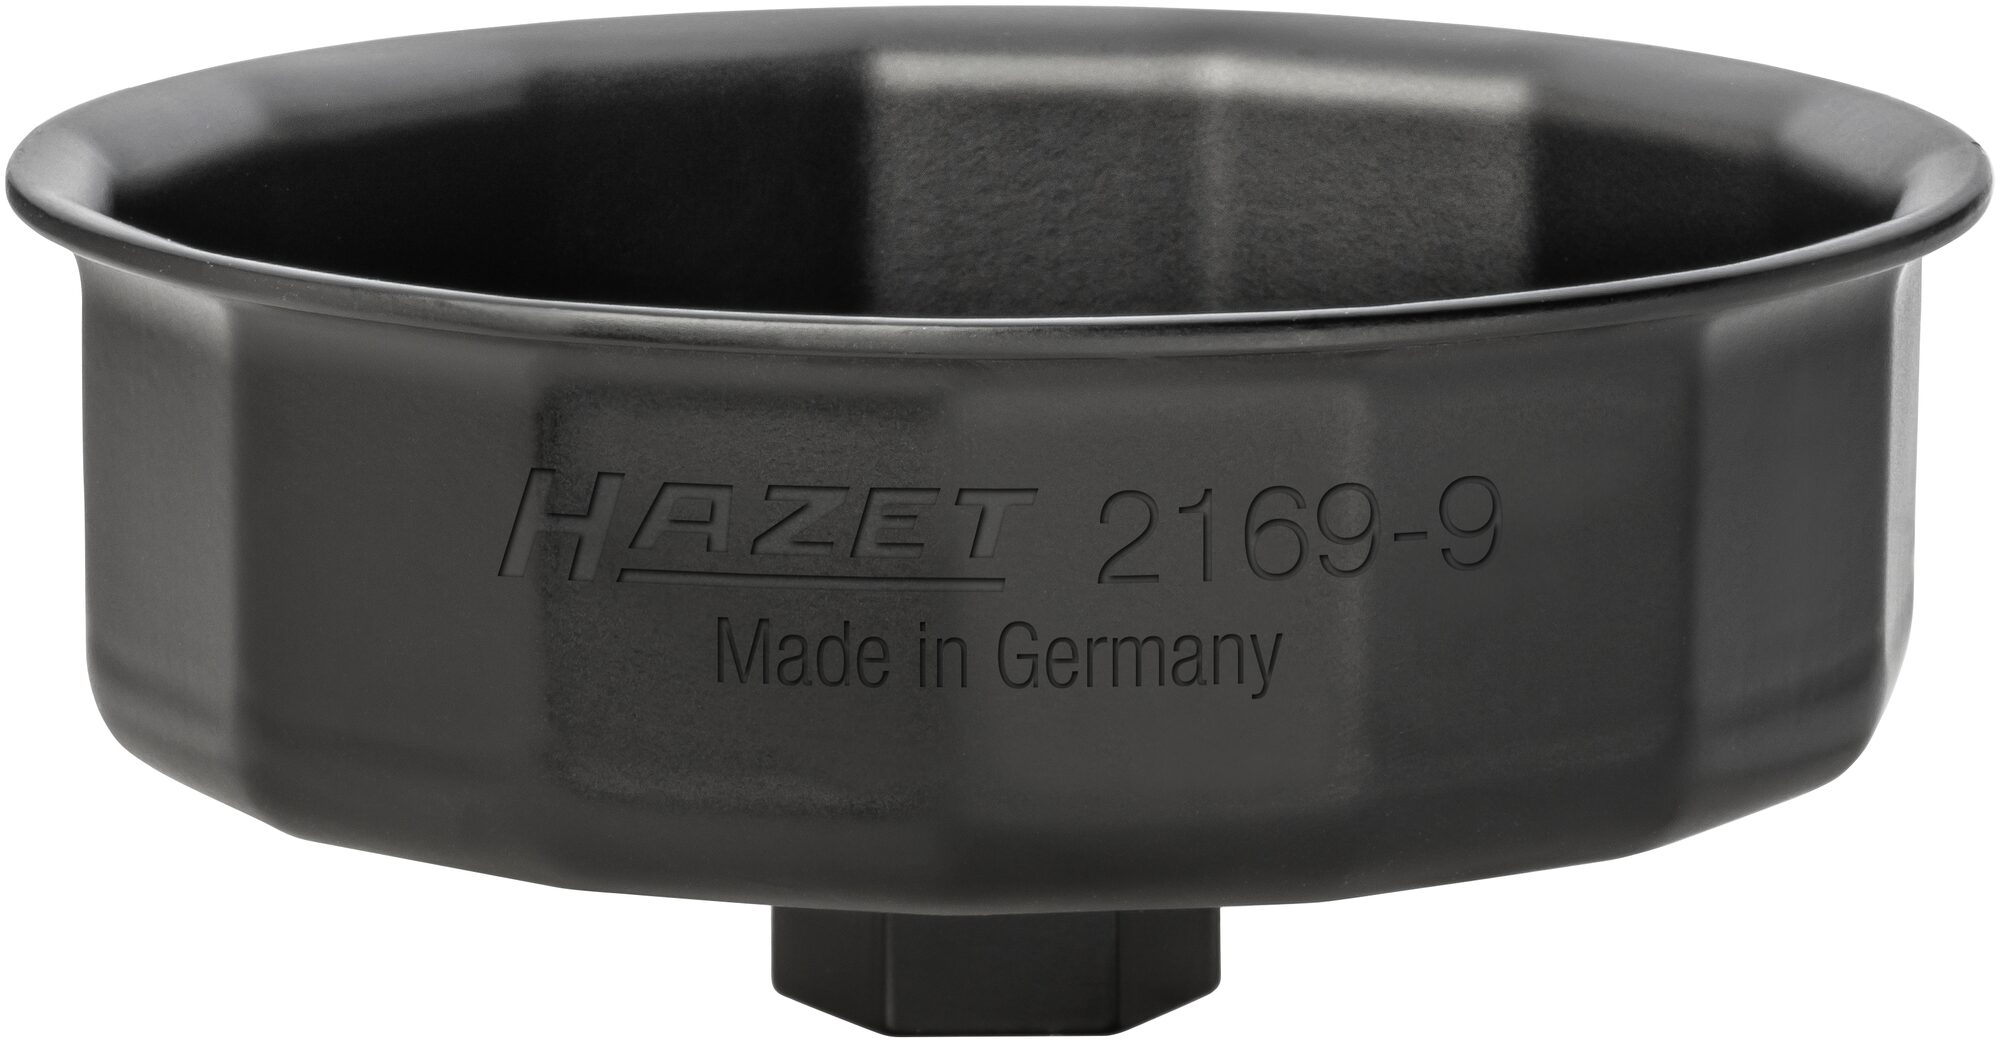 HAZET Ölfilter-Schlüssel 2169-9 · Außen-Sechskant 24 mm, Vierkant